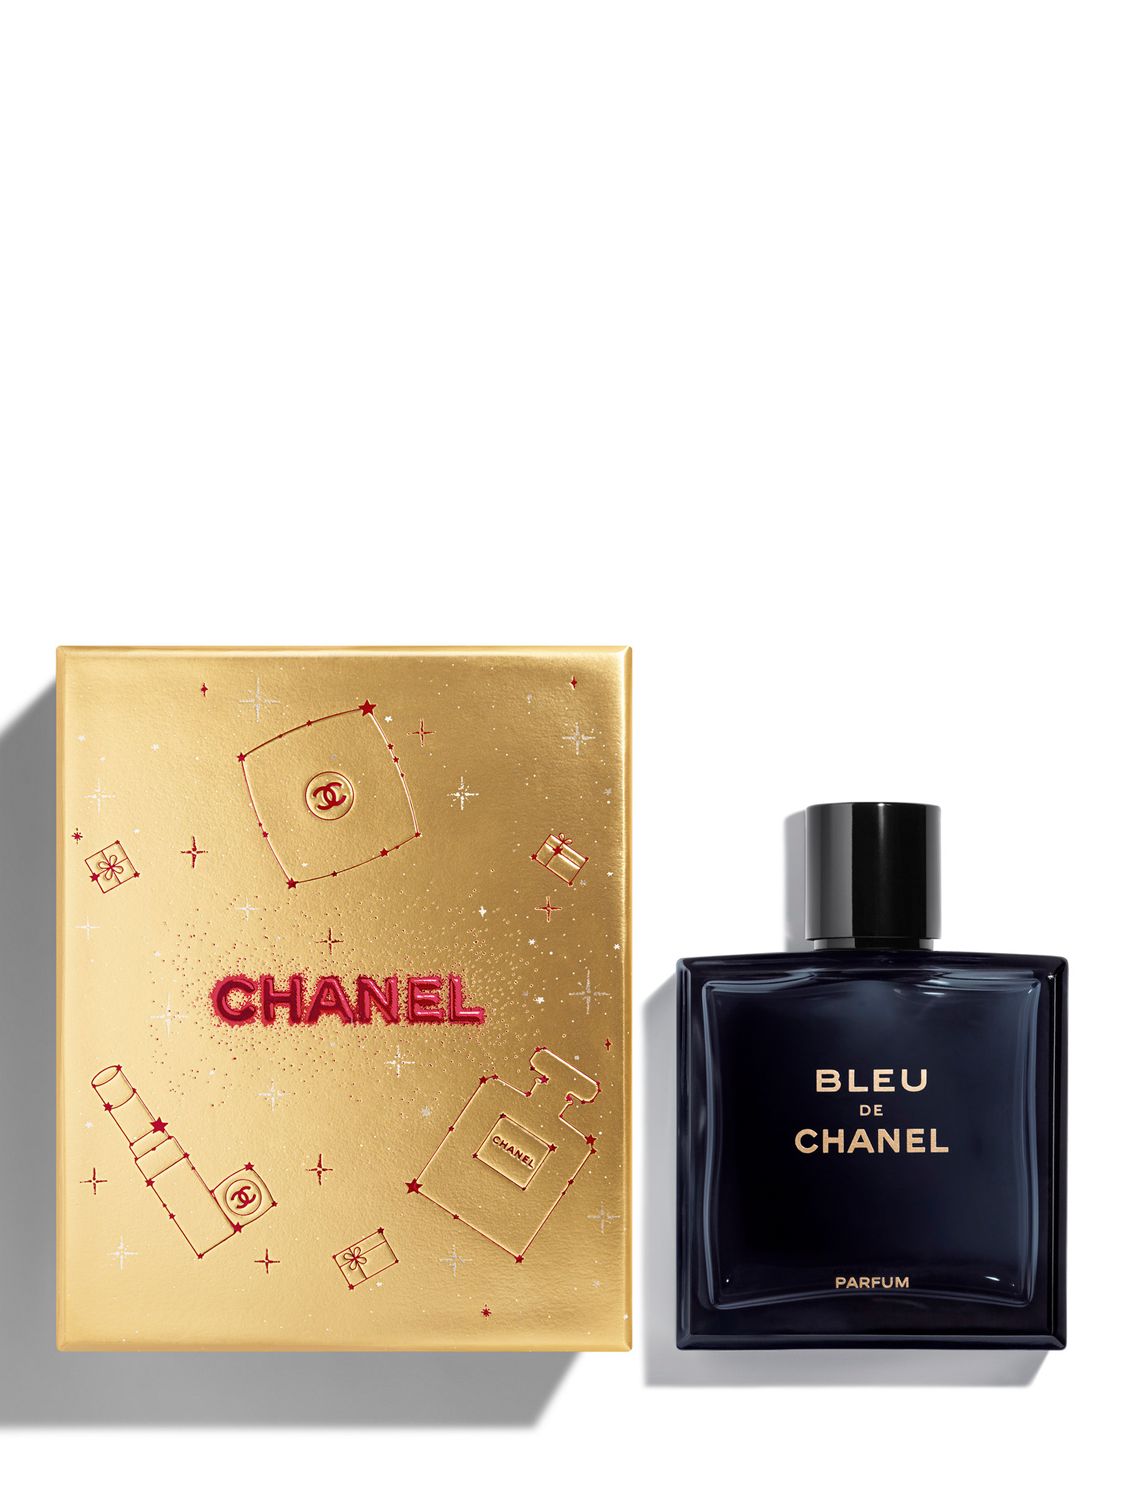 Bleu De Chanel Gift Pack | vlr.eng.br